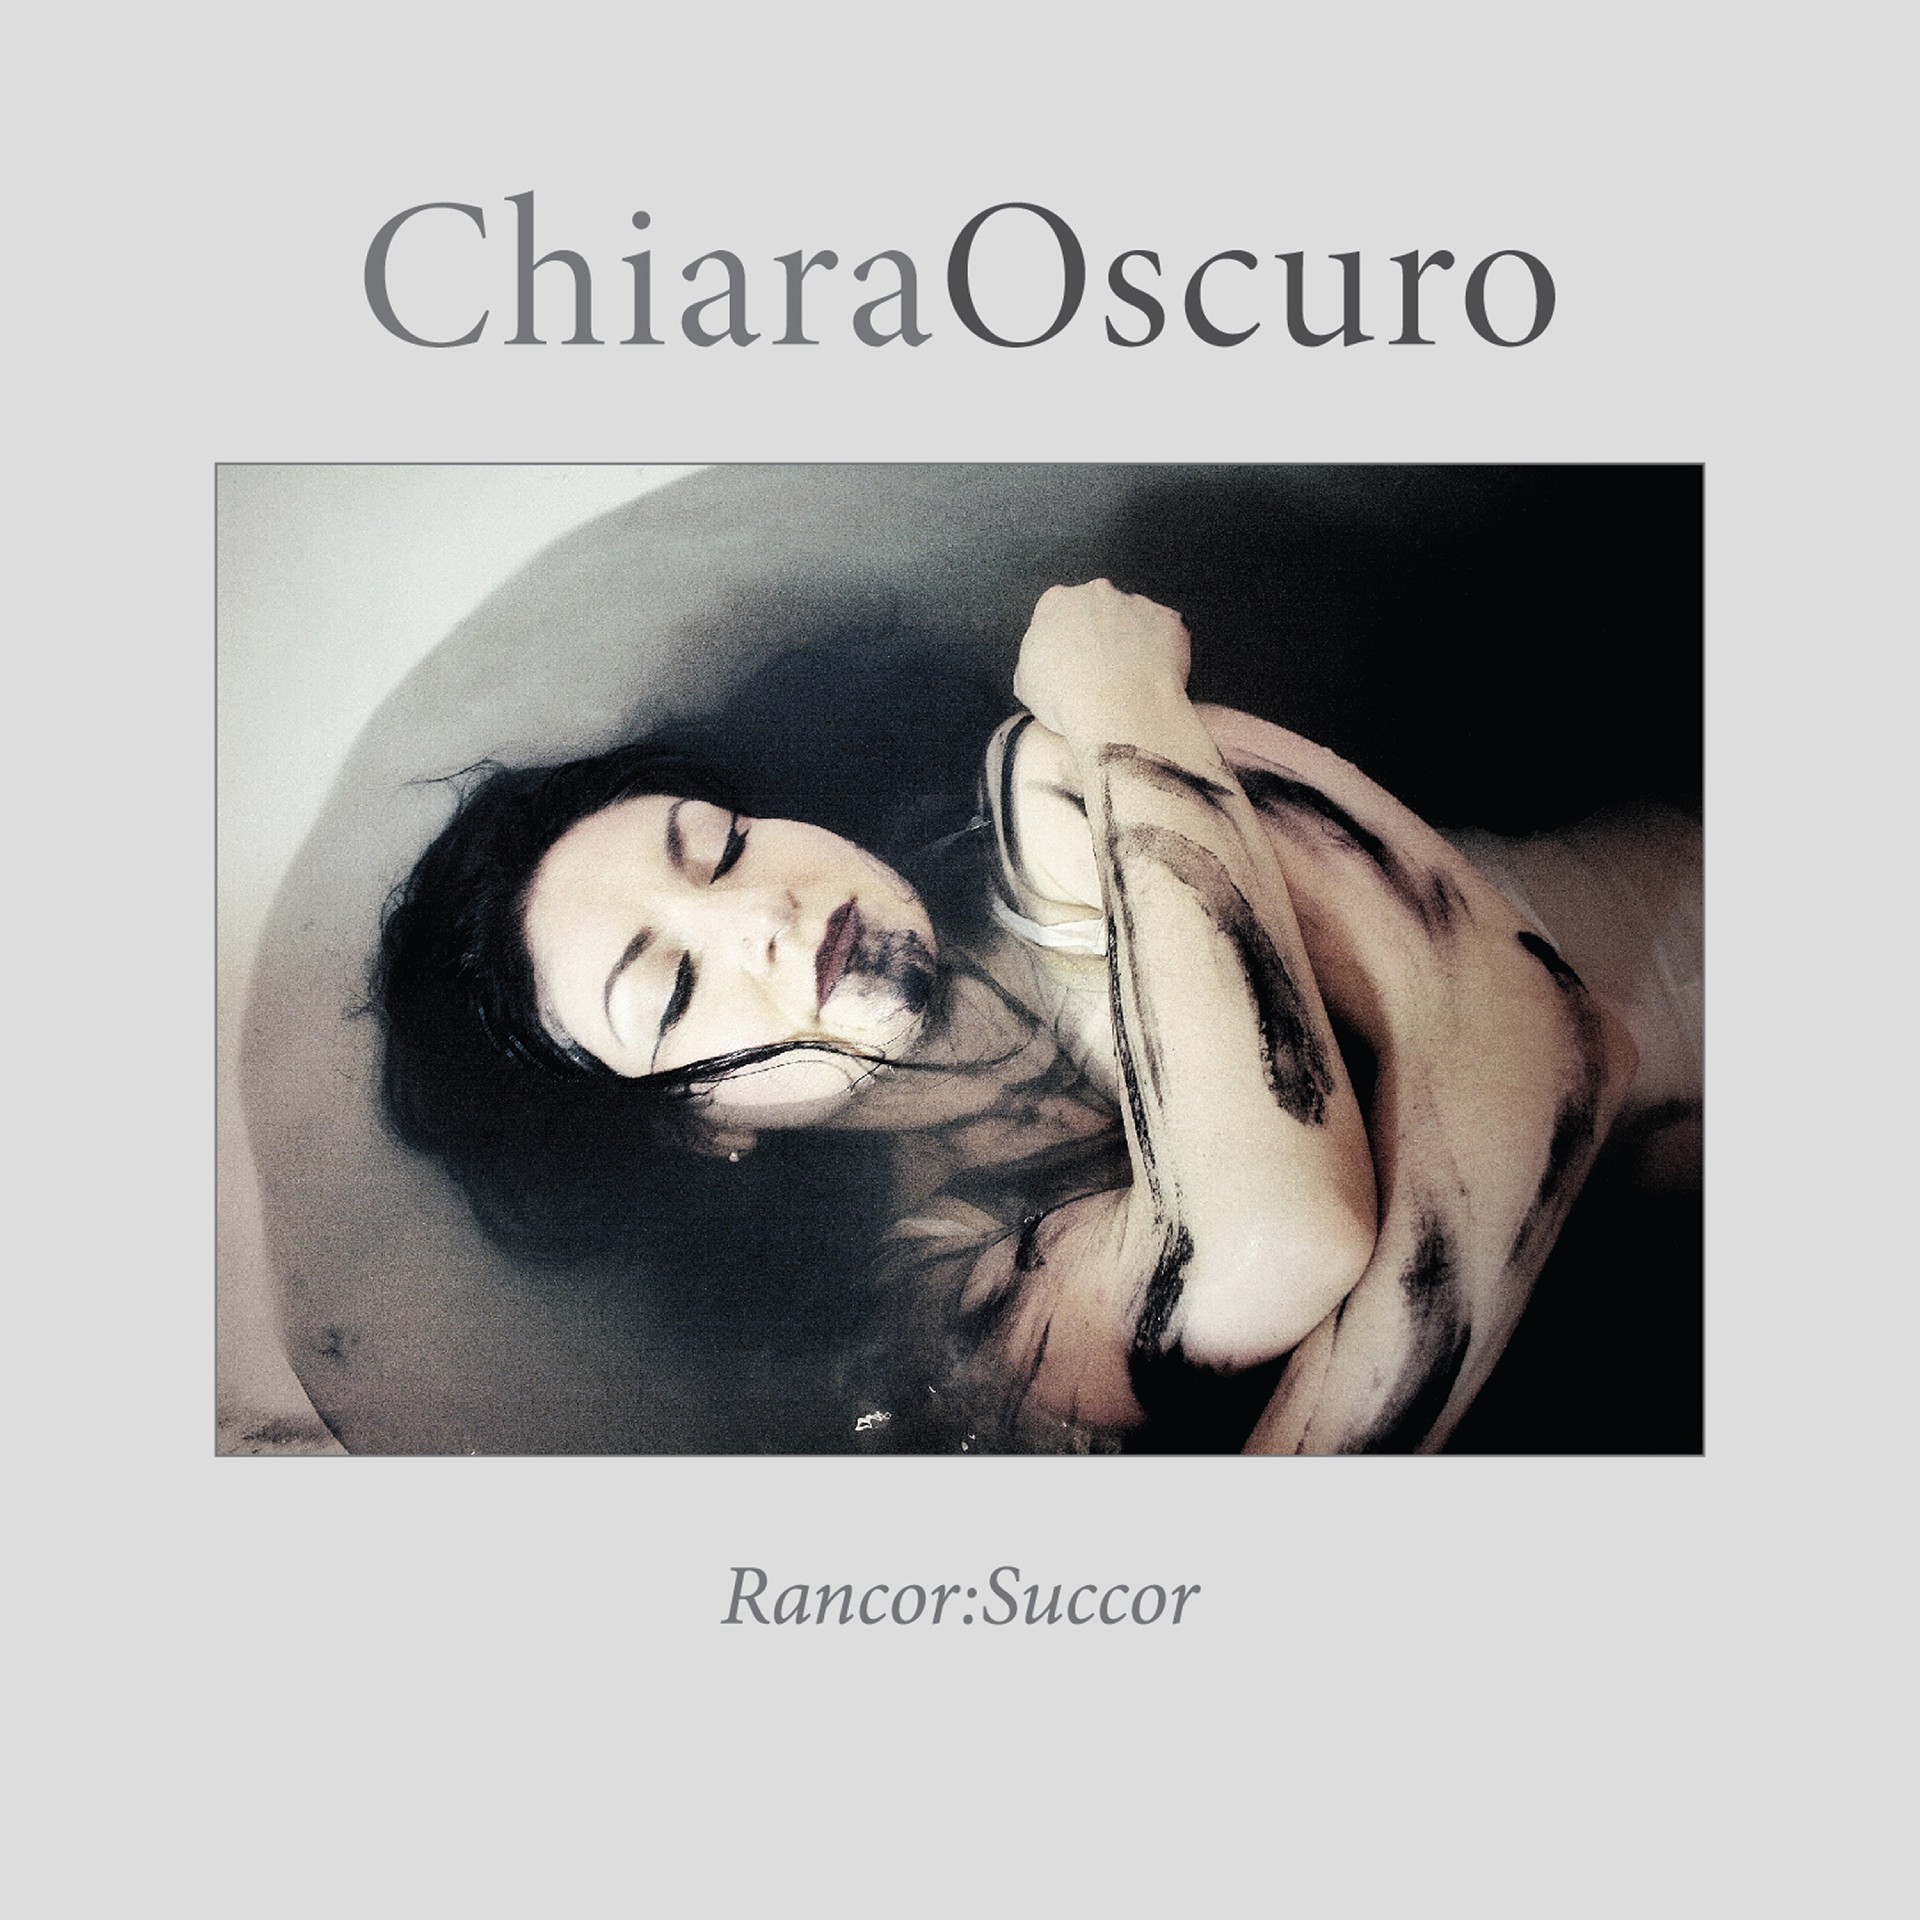 ChiaraOscuro ‘Rancor:Succor’ album artwork